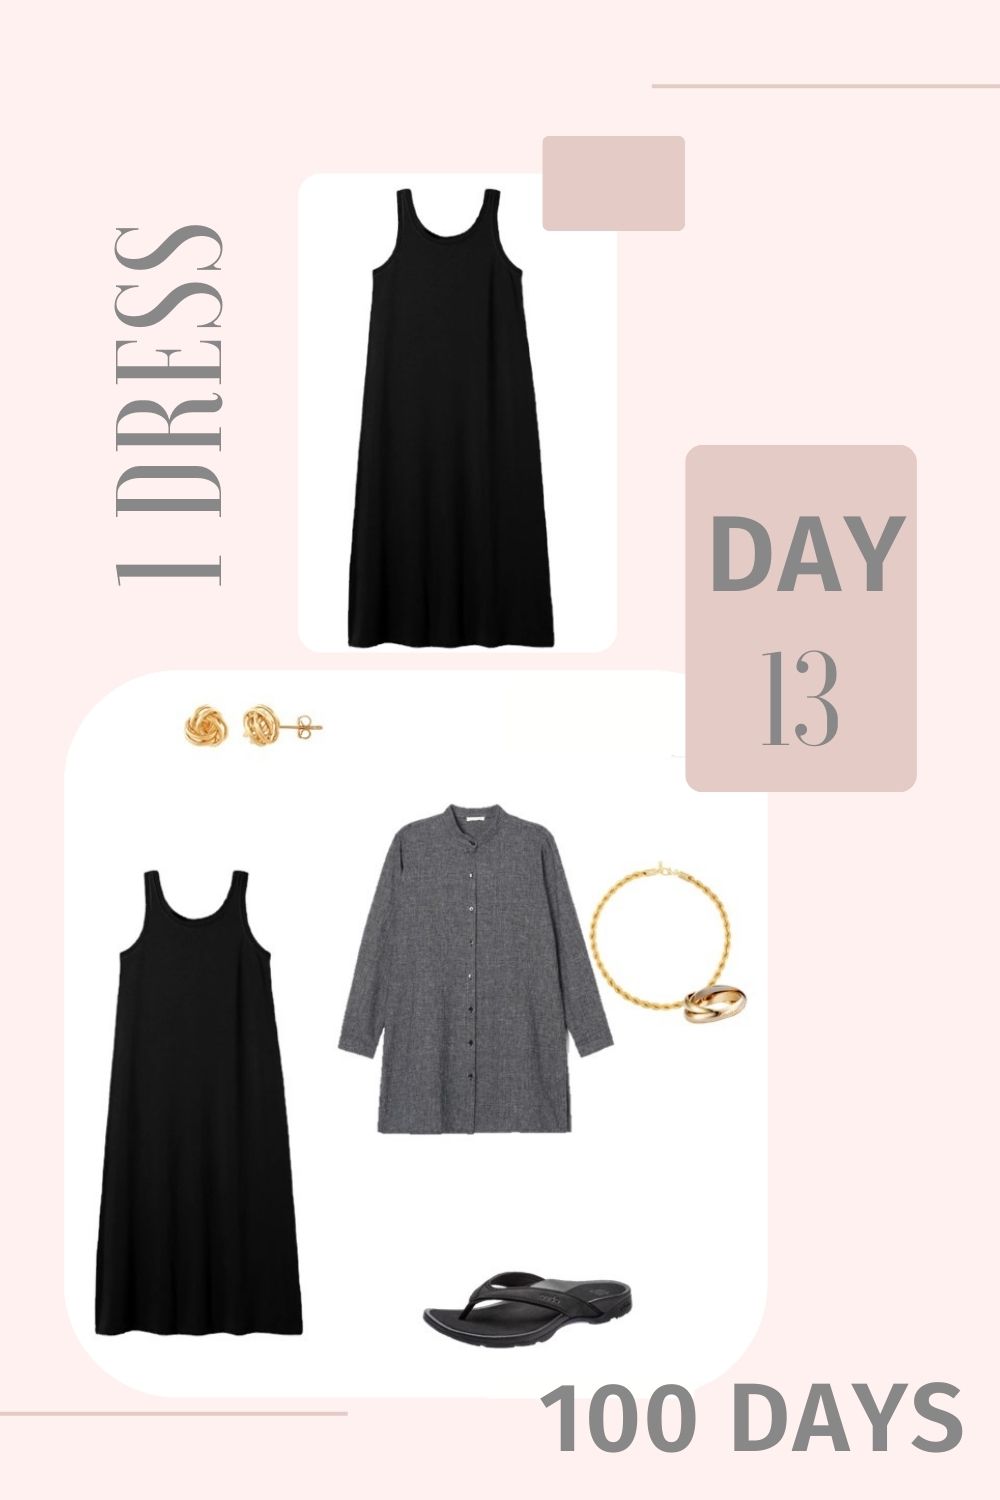 1 Dress 100 Days - Day 13